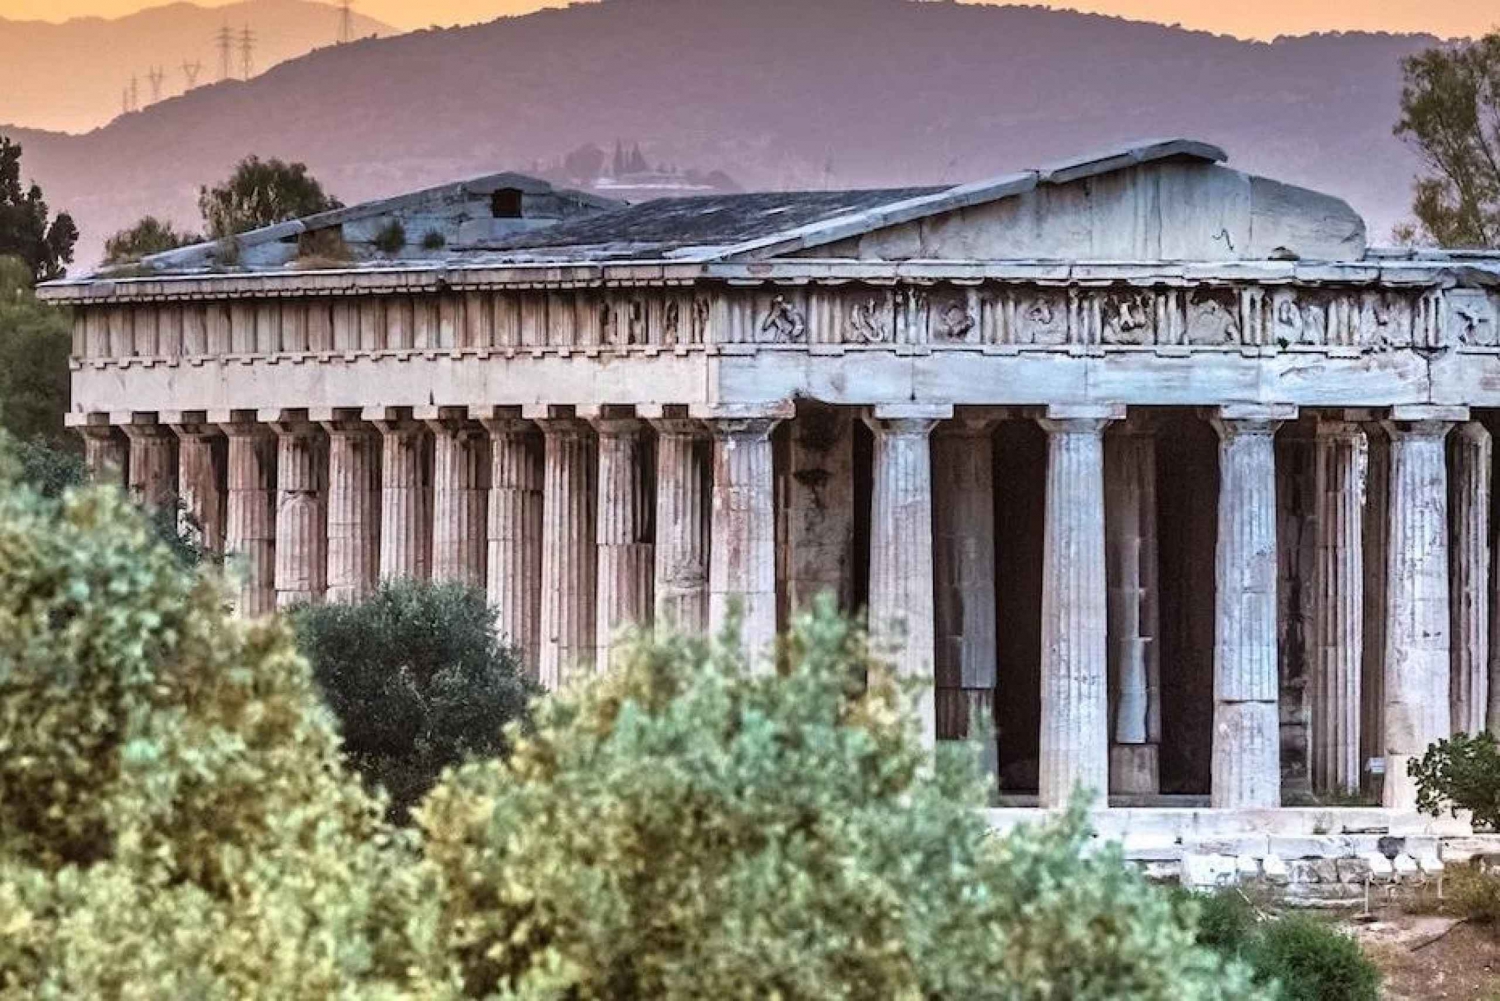 Athen: Den antikke Agoraen i Athen - selvguidet audiotur